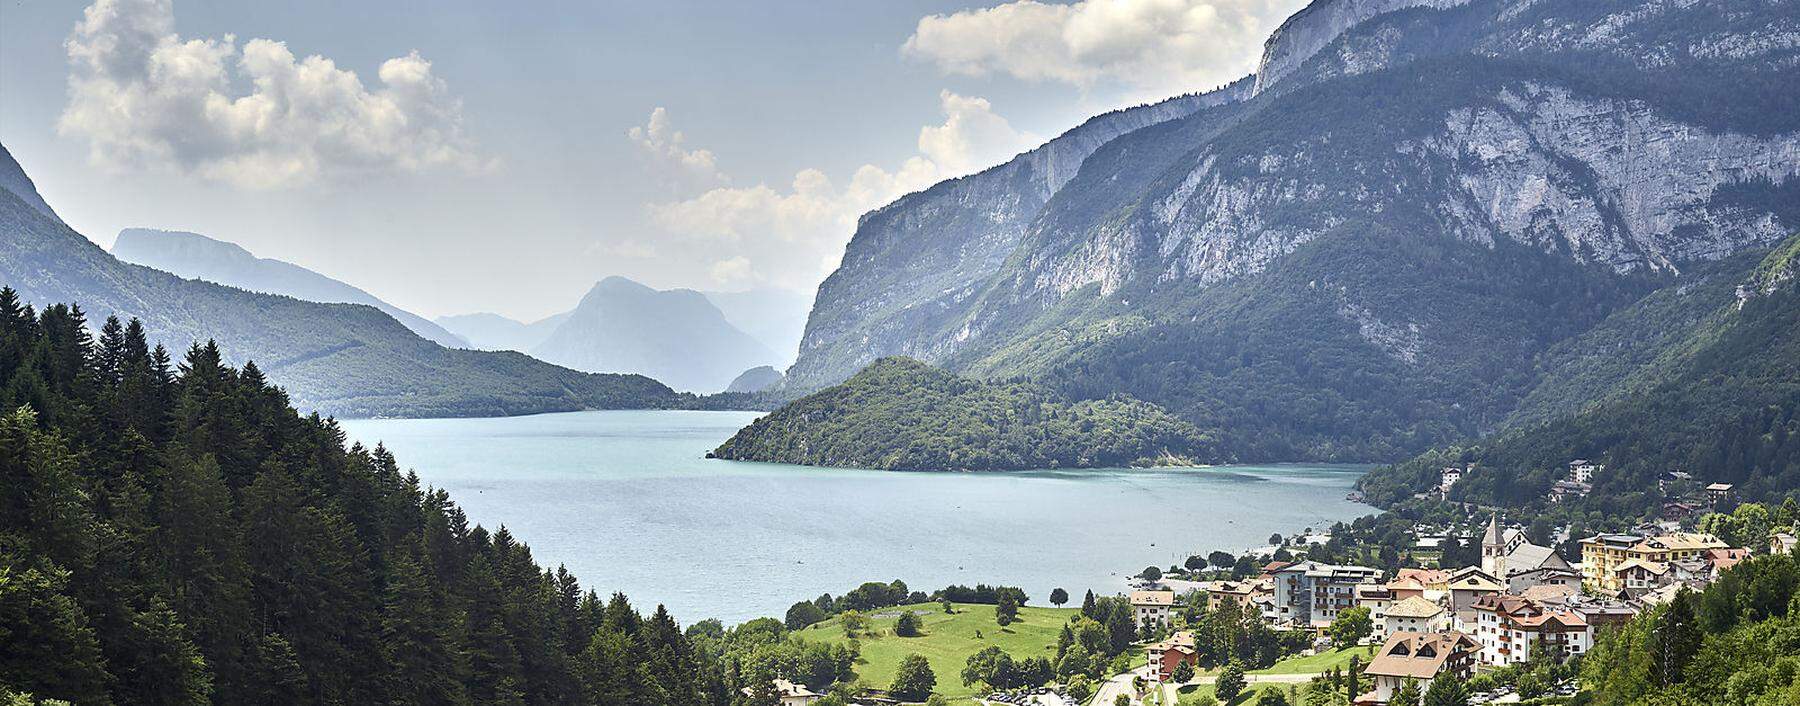 Italiens angeblich schönster See: der Lago di Molveno im Trentino.